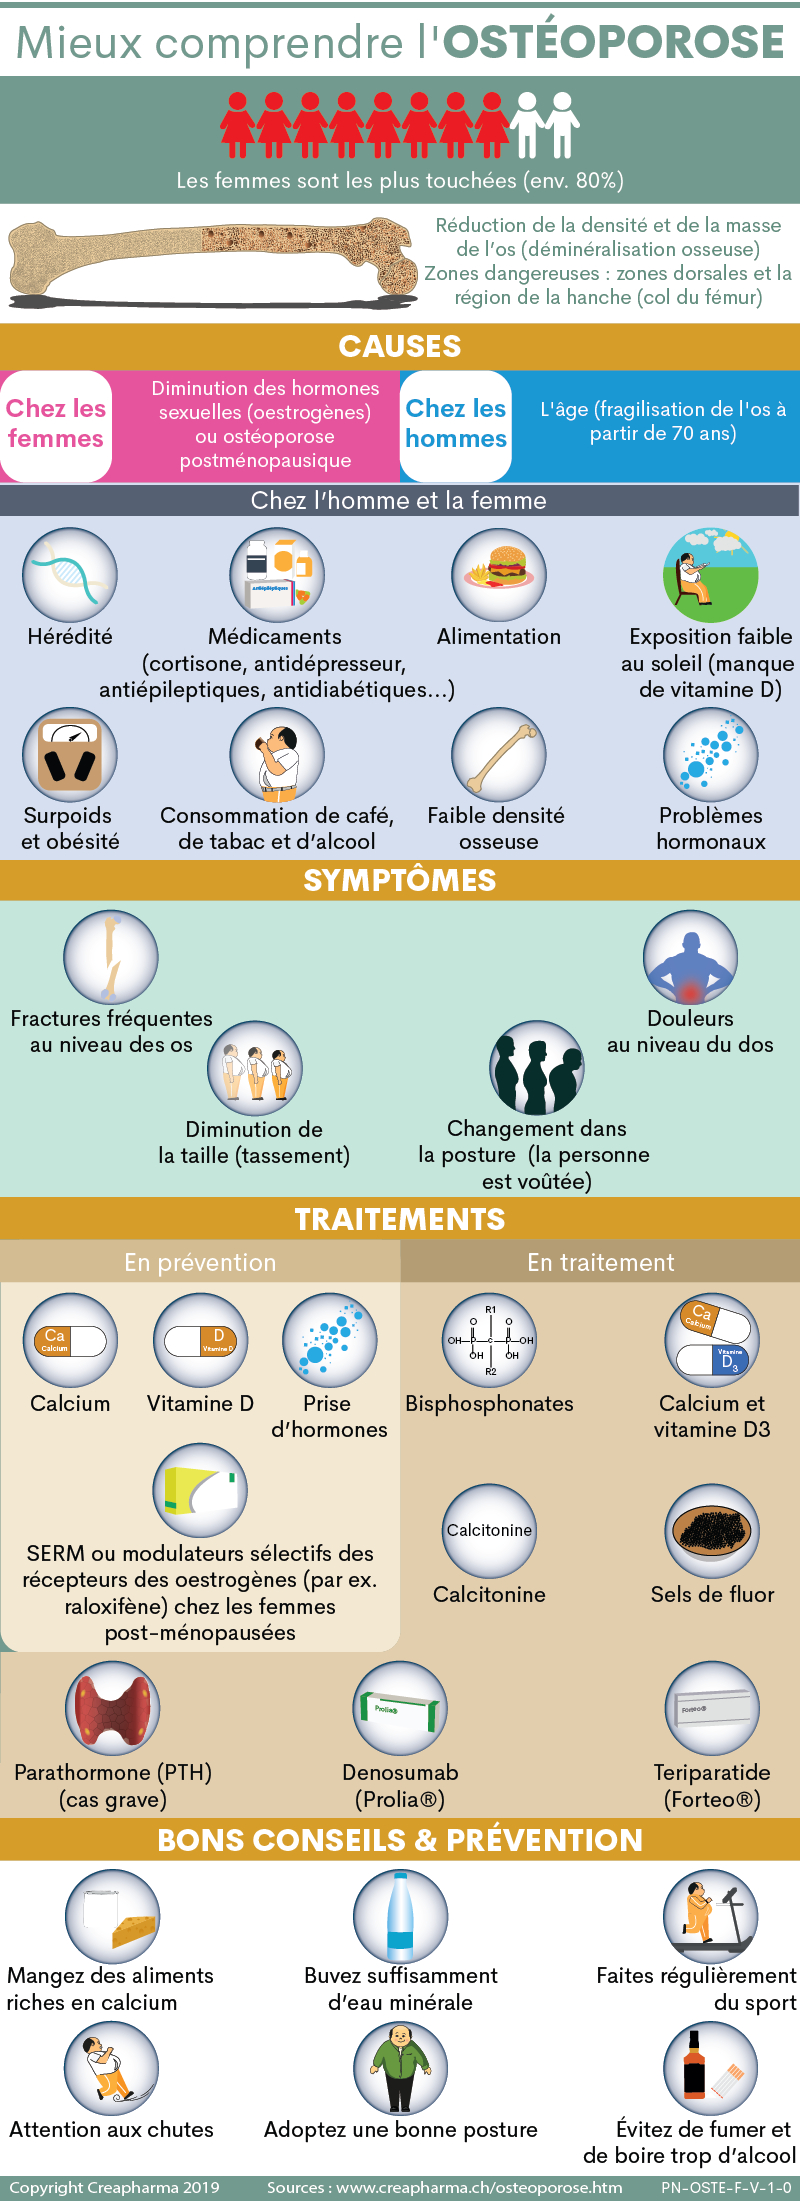 Ostéoporose, Définition, symptômes, traitement